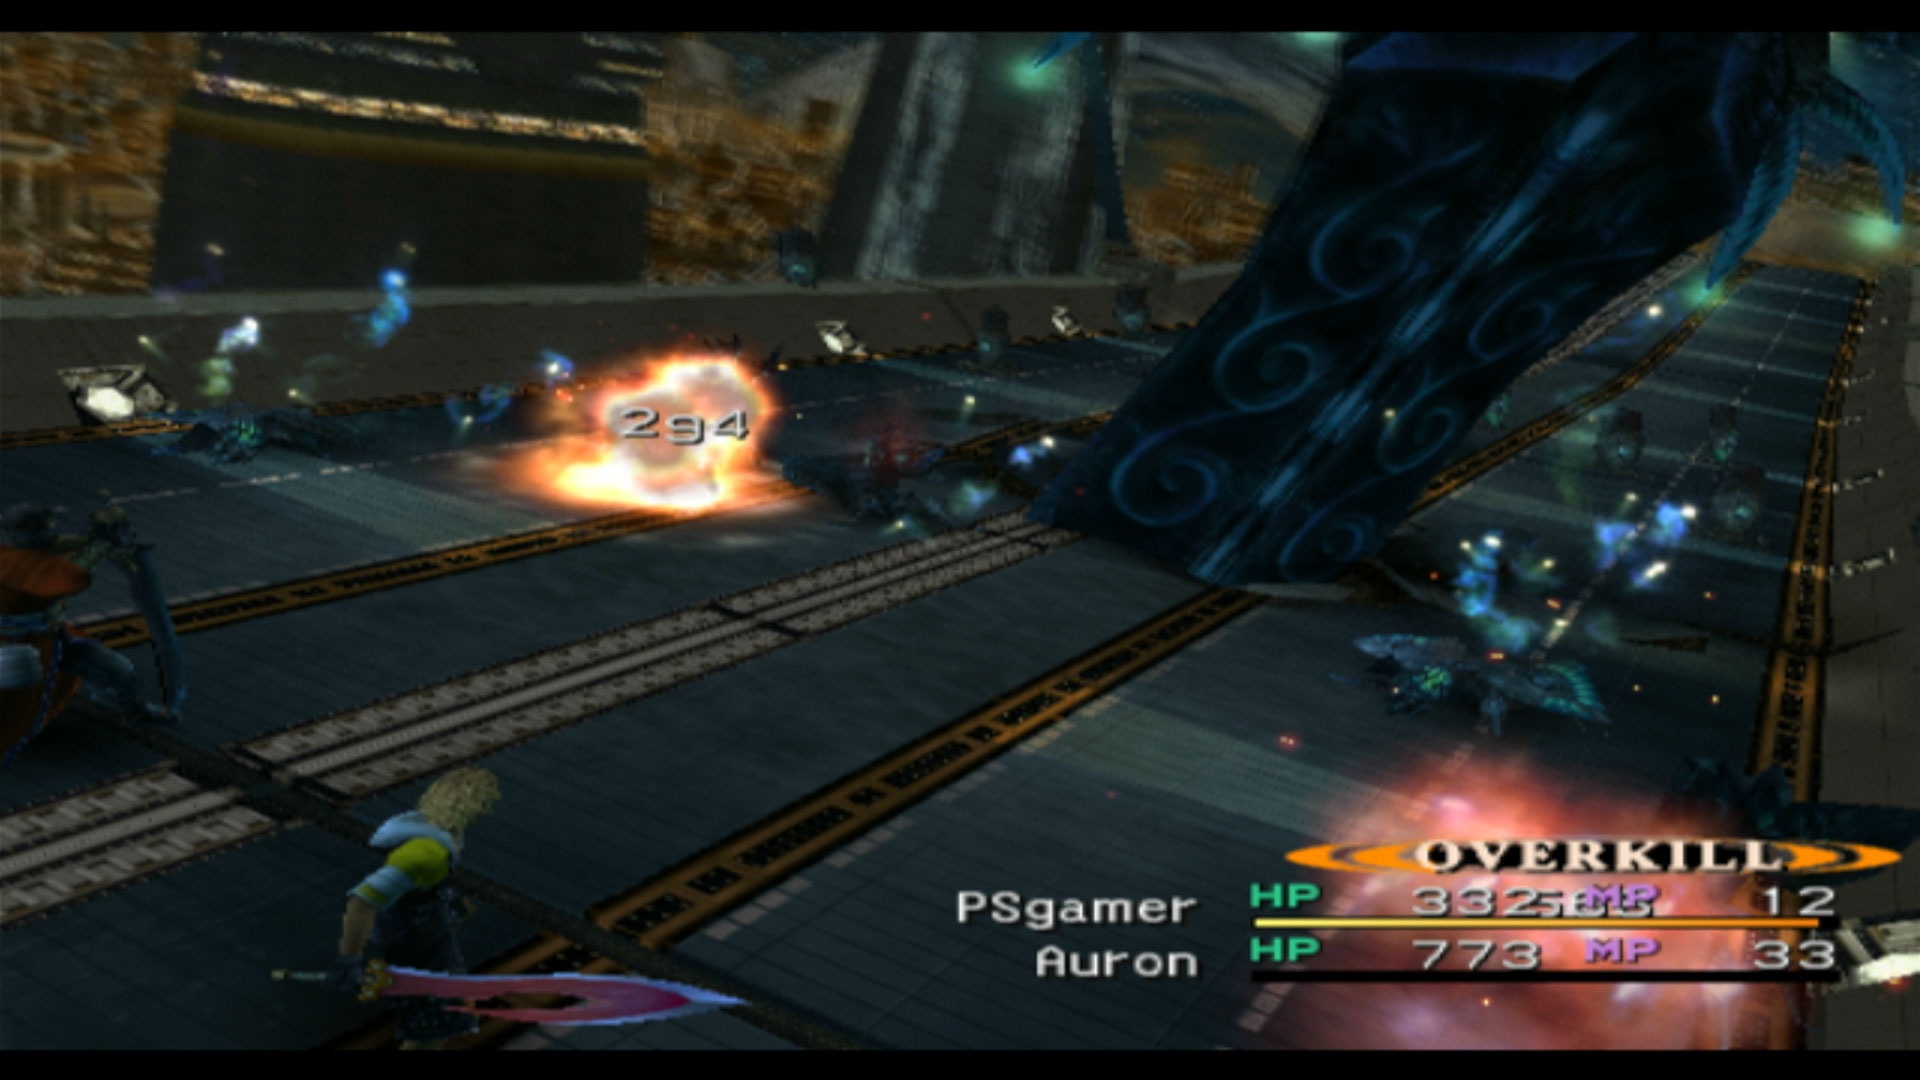 Final Fantasy X PS2 overkill attack